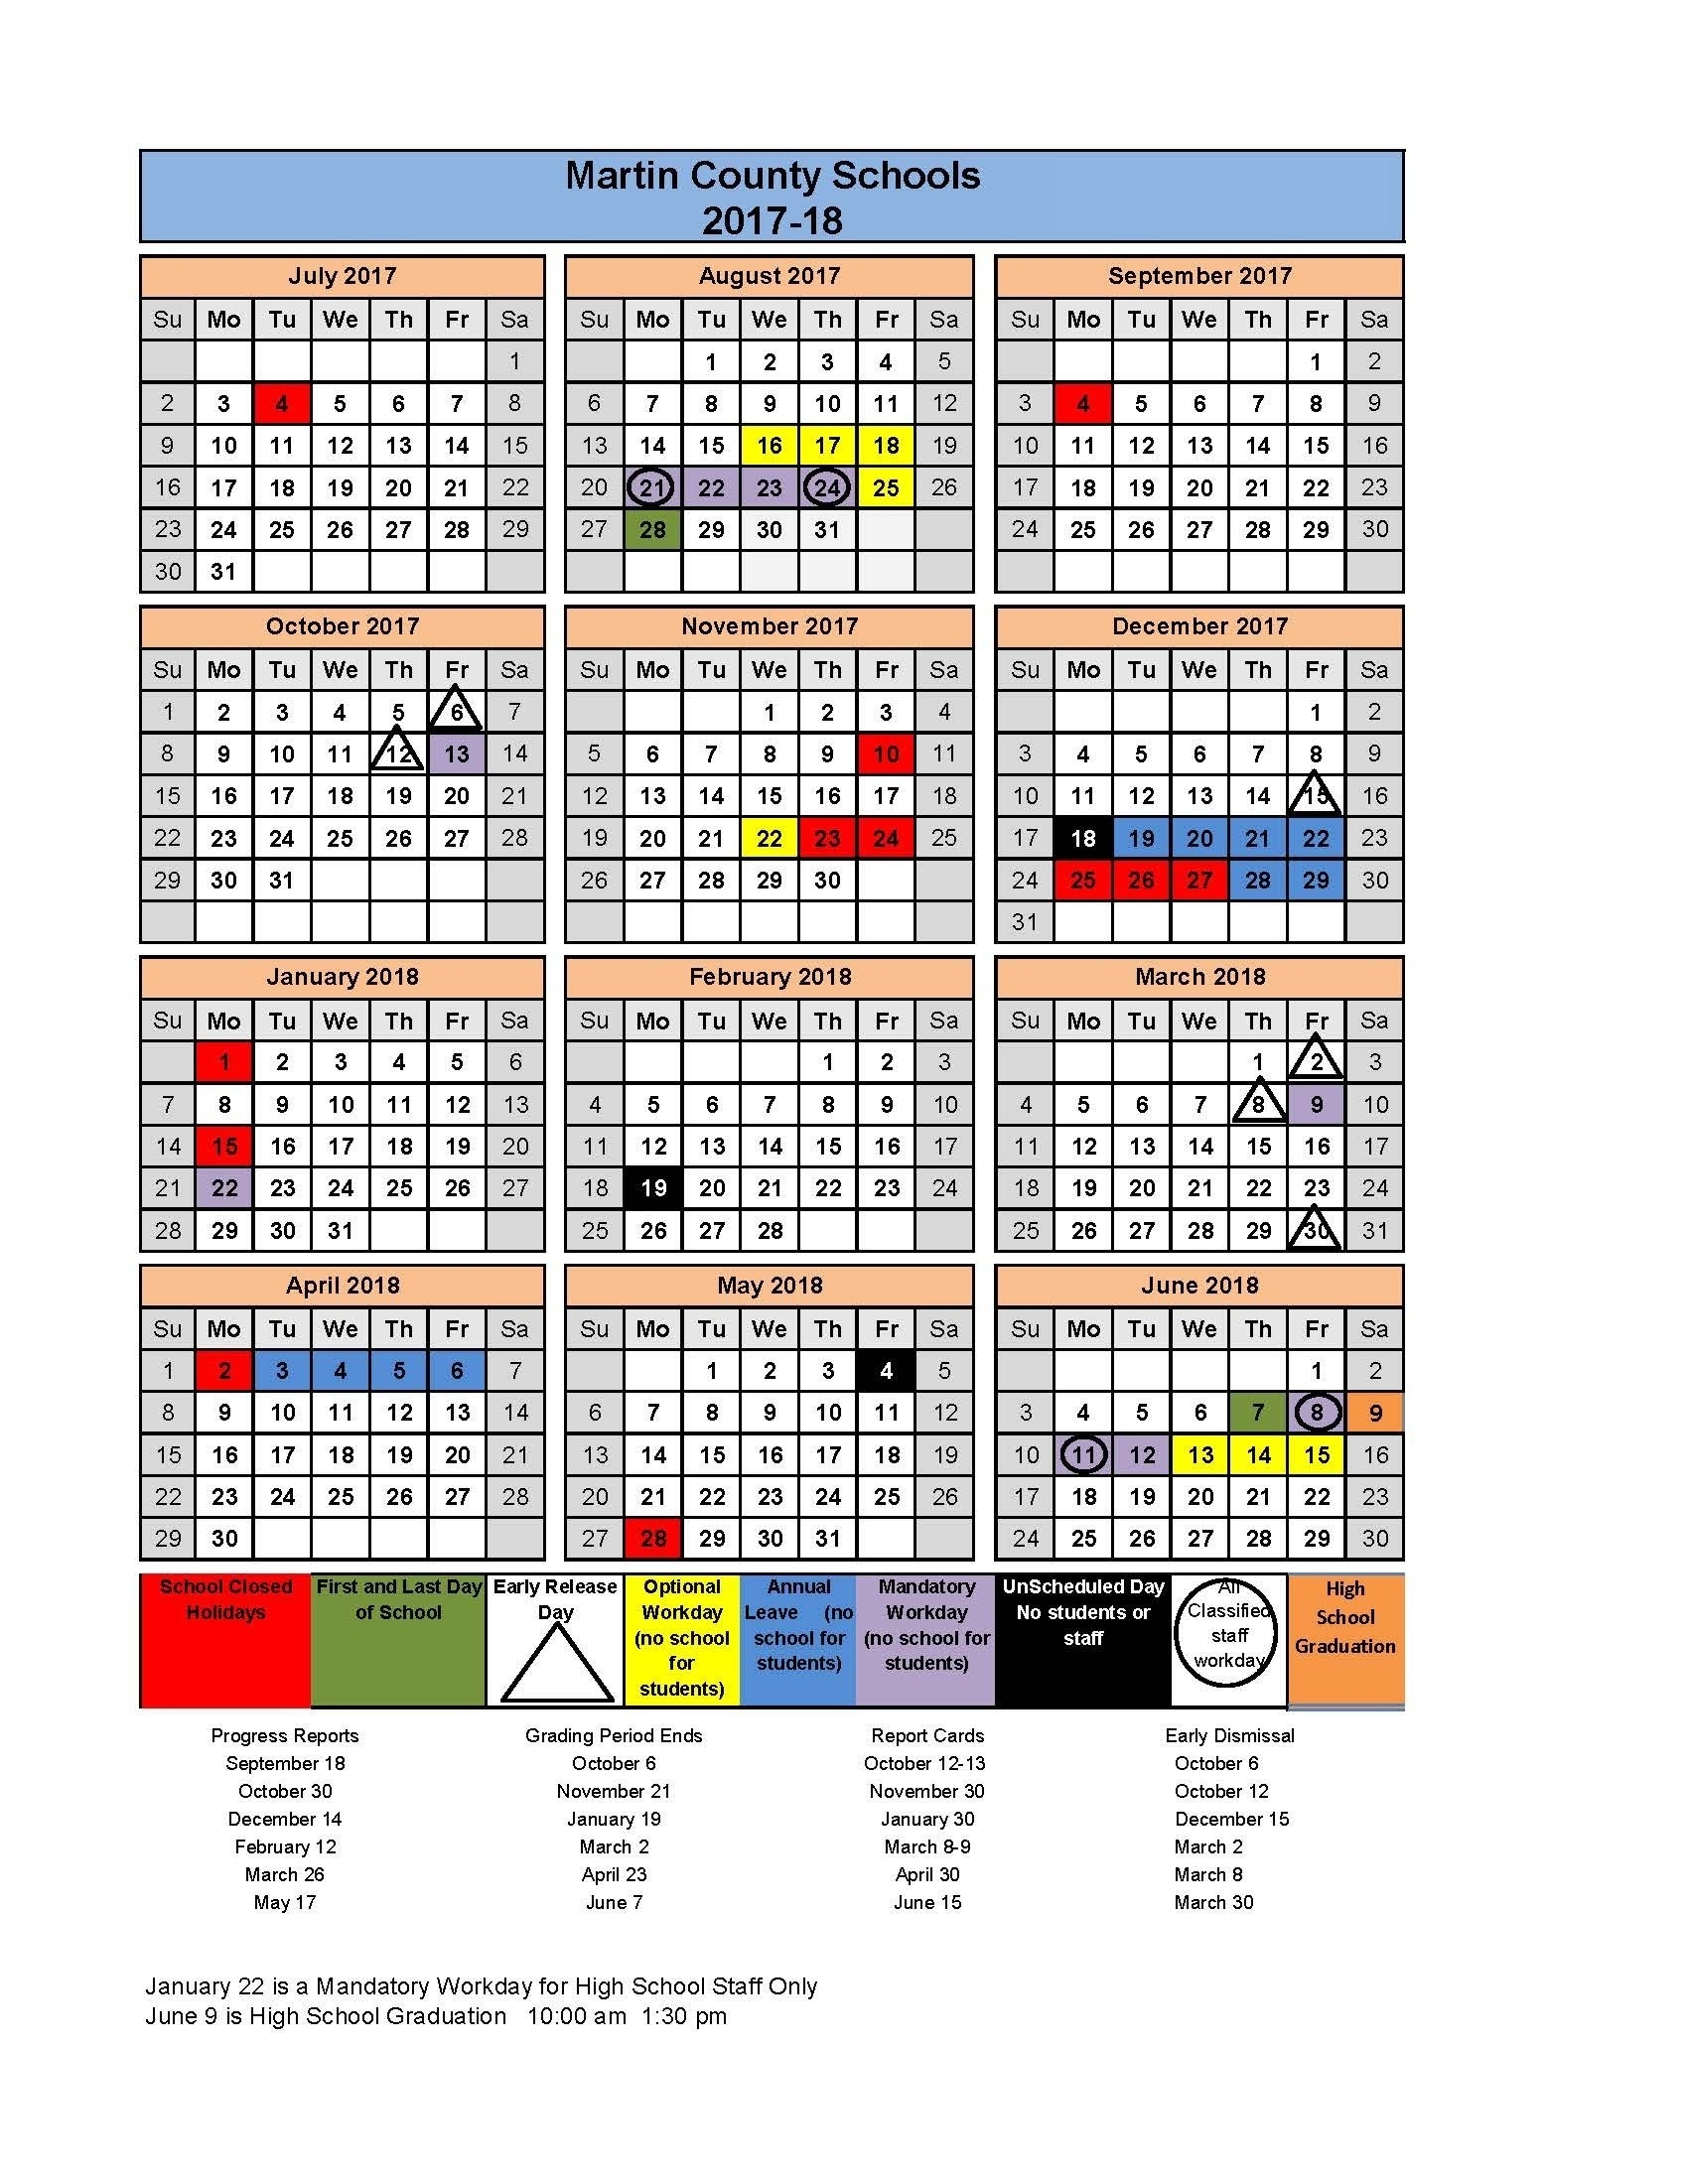 Martin County High School Calendar 2017-2018 Printable For No Charge Remarkable School Calendar Martin County